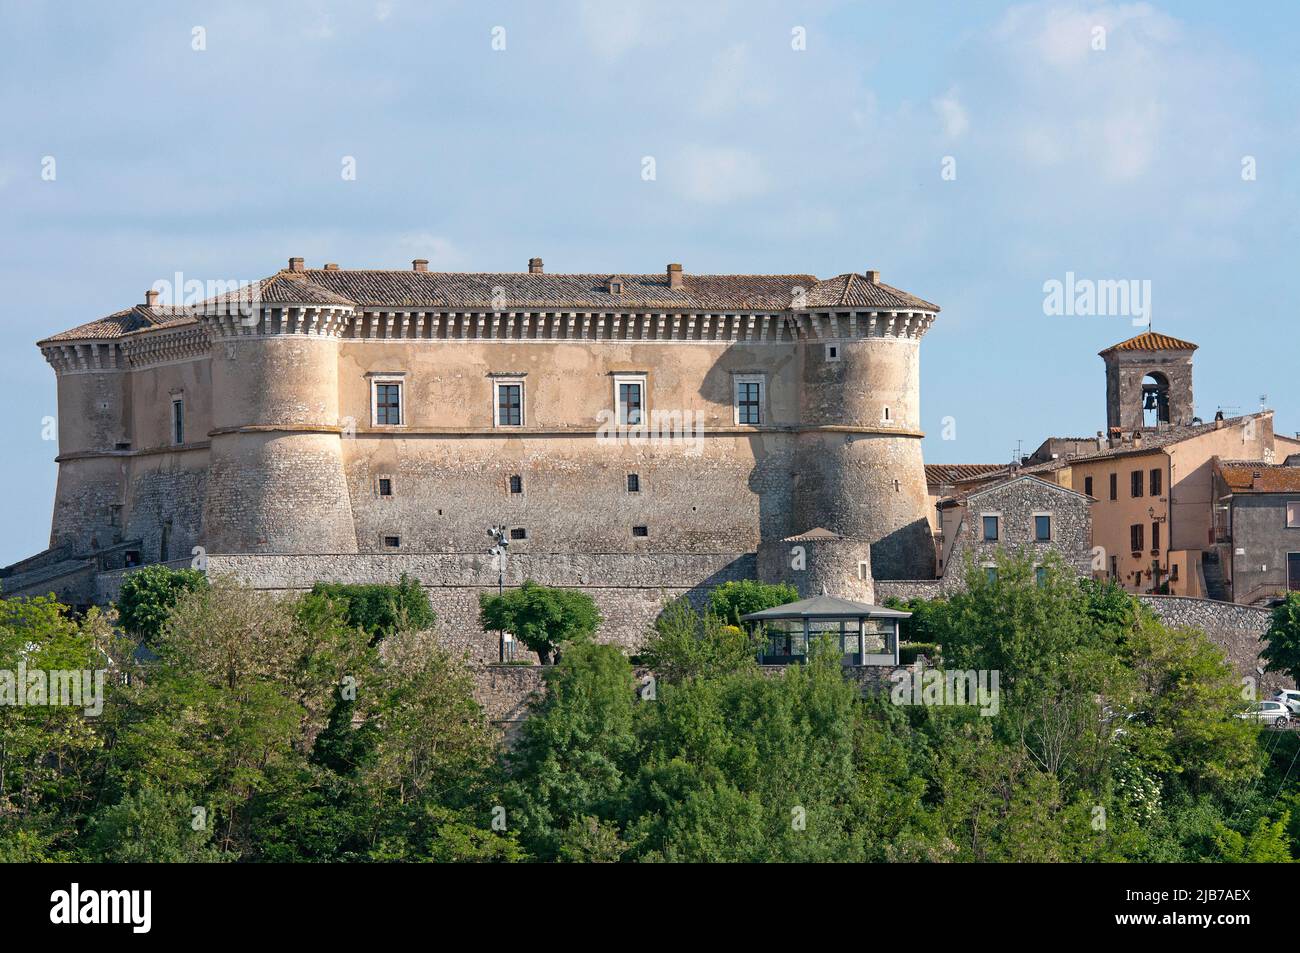 Château médiéval d'Alviano, Ombrie, Italie Banque D'Images